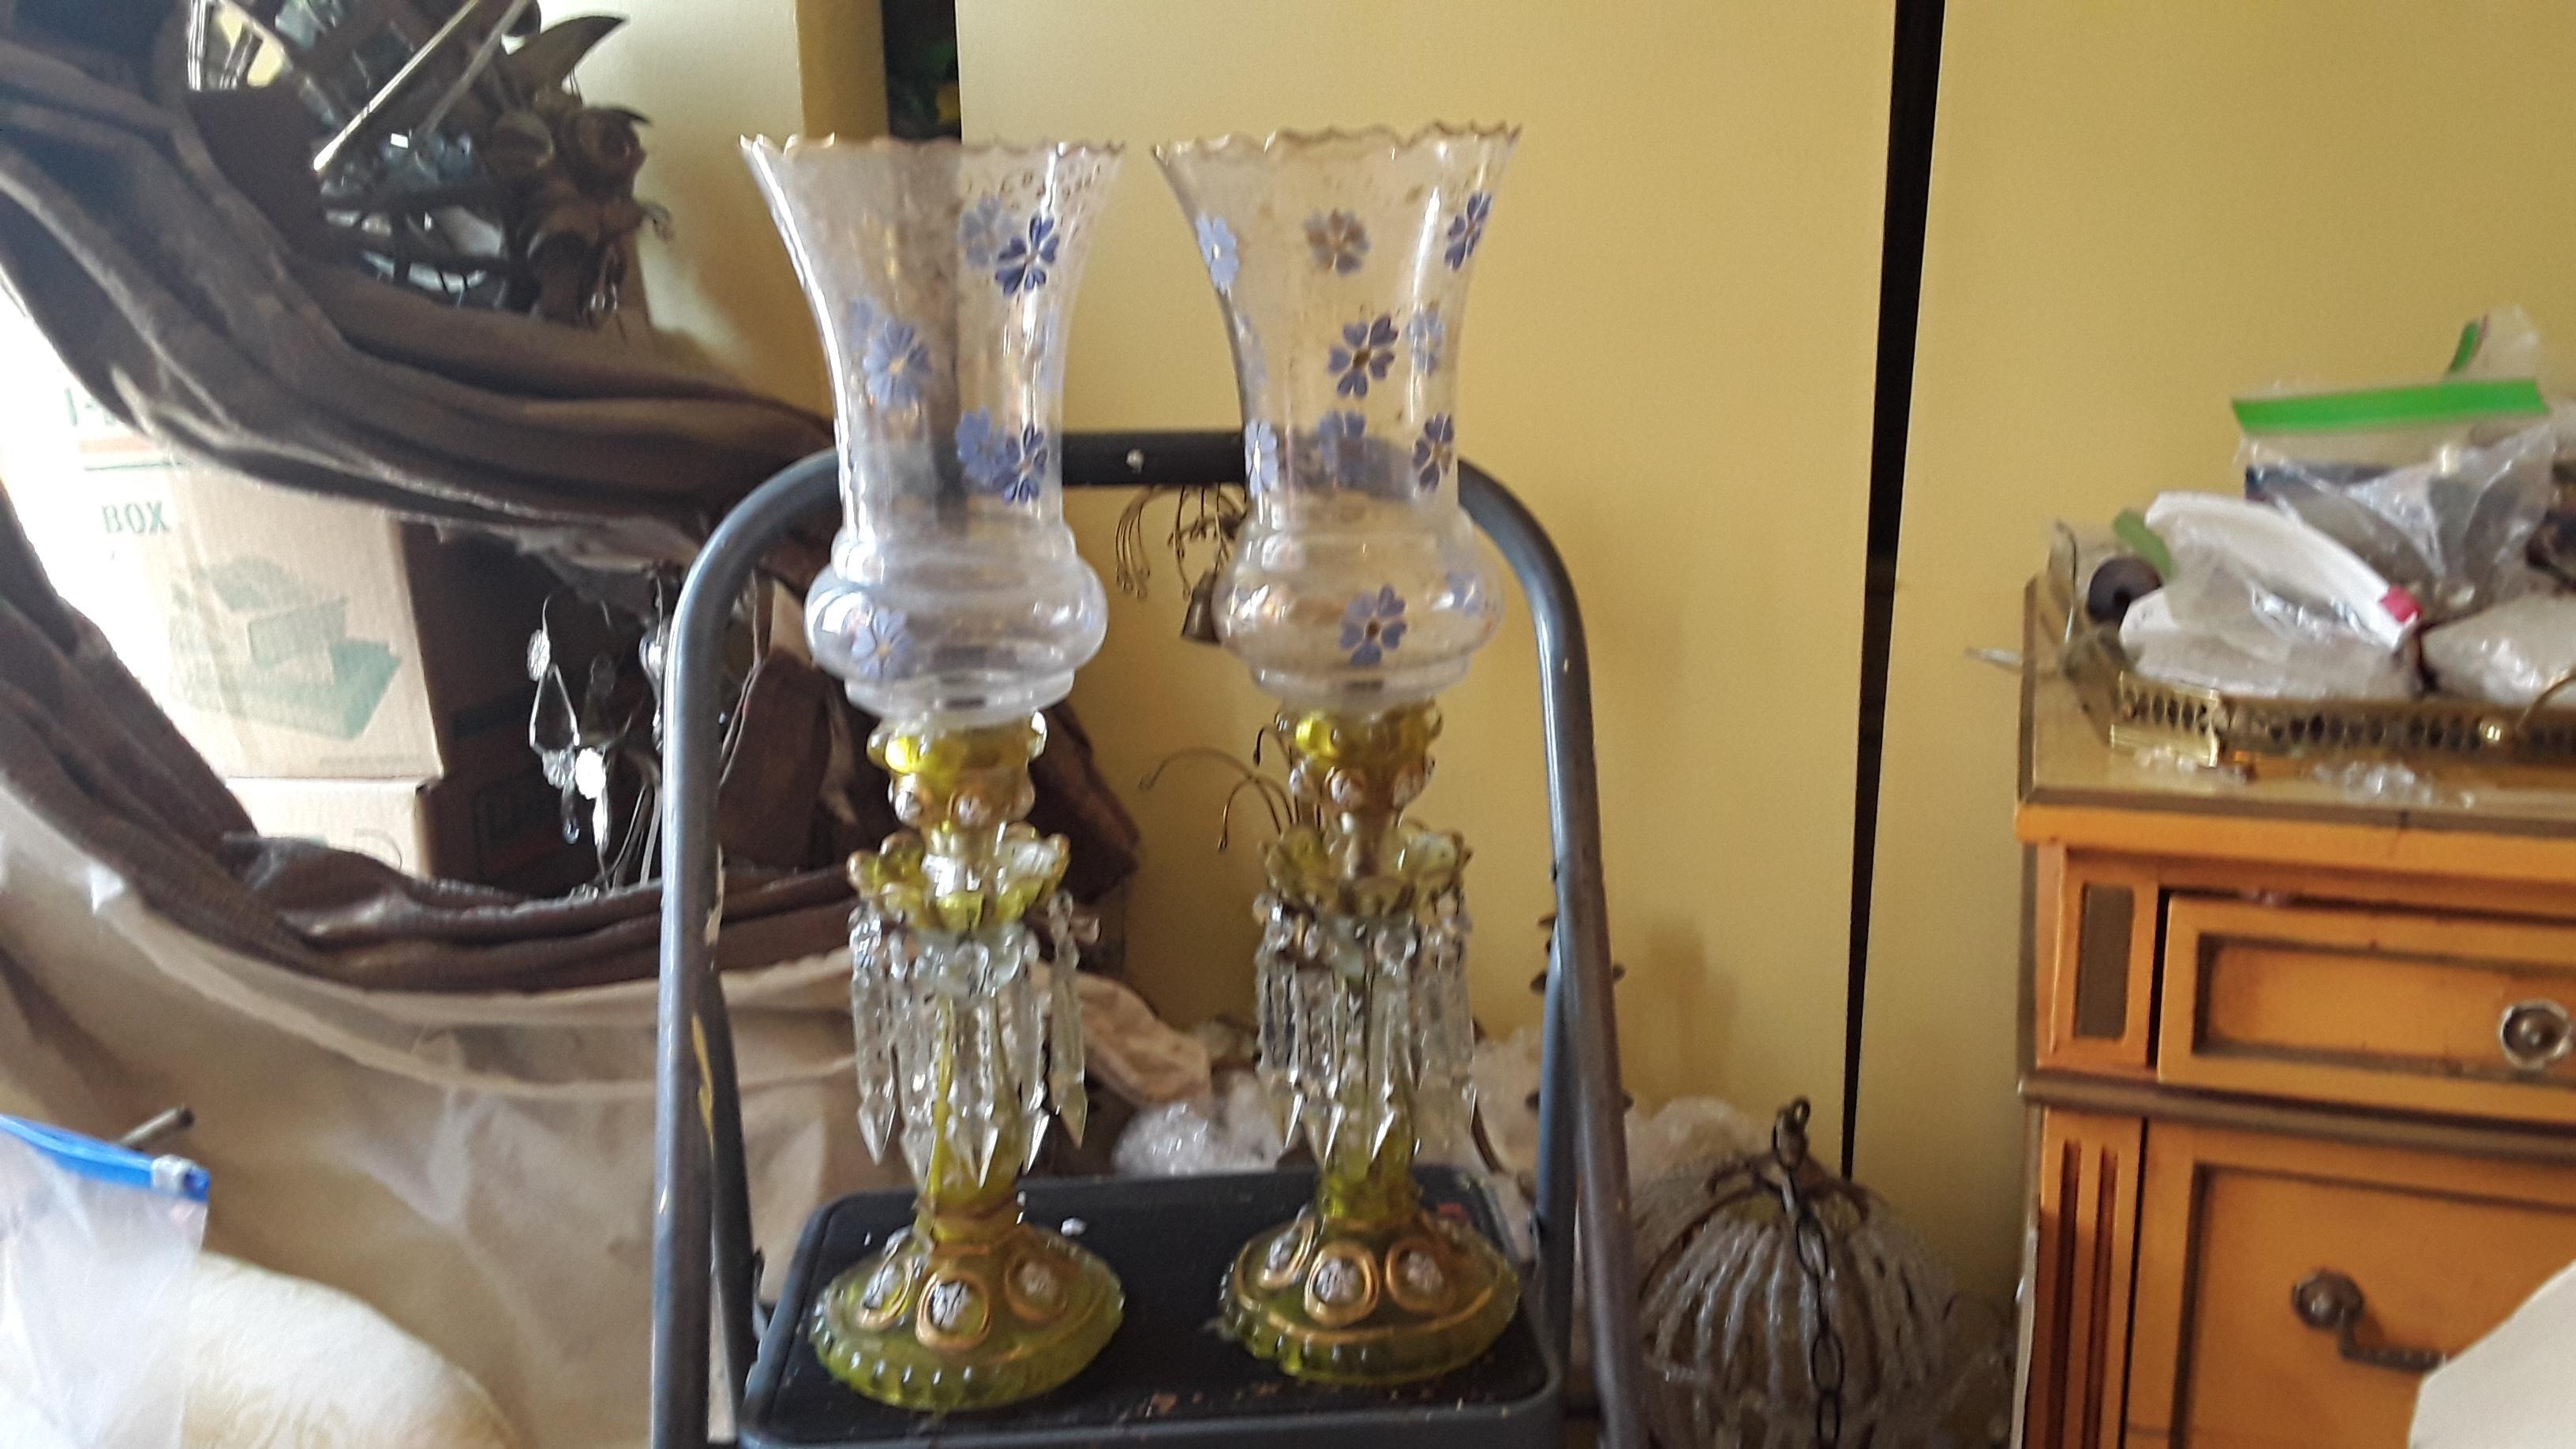 Paire de lampes de table / bougeoirs en ambre et fleurs émaillées peintes à la main, dynastie Qajar, du XIXe siècle, avec abat-jour en cristal.
Fabriqué par Baccarat. Le corps en ambre est décoré de motifs floraux - émail blanc et nuances de bleu.